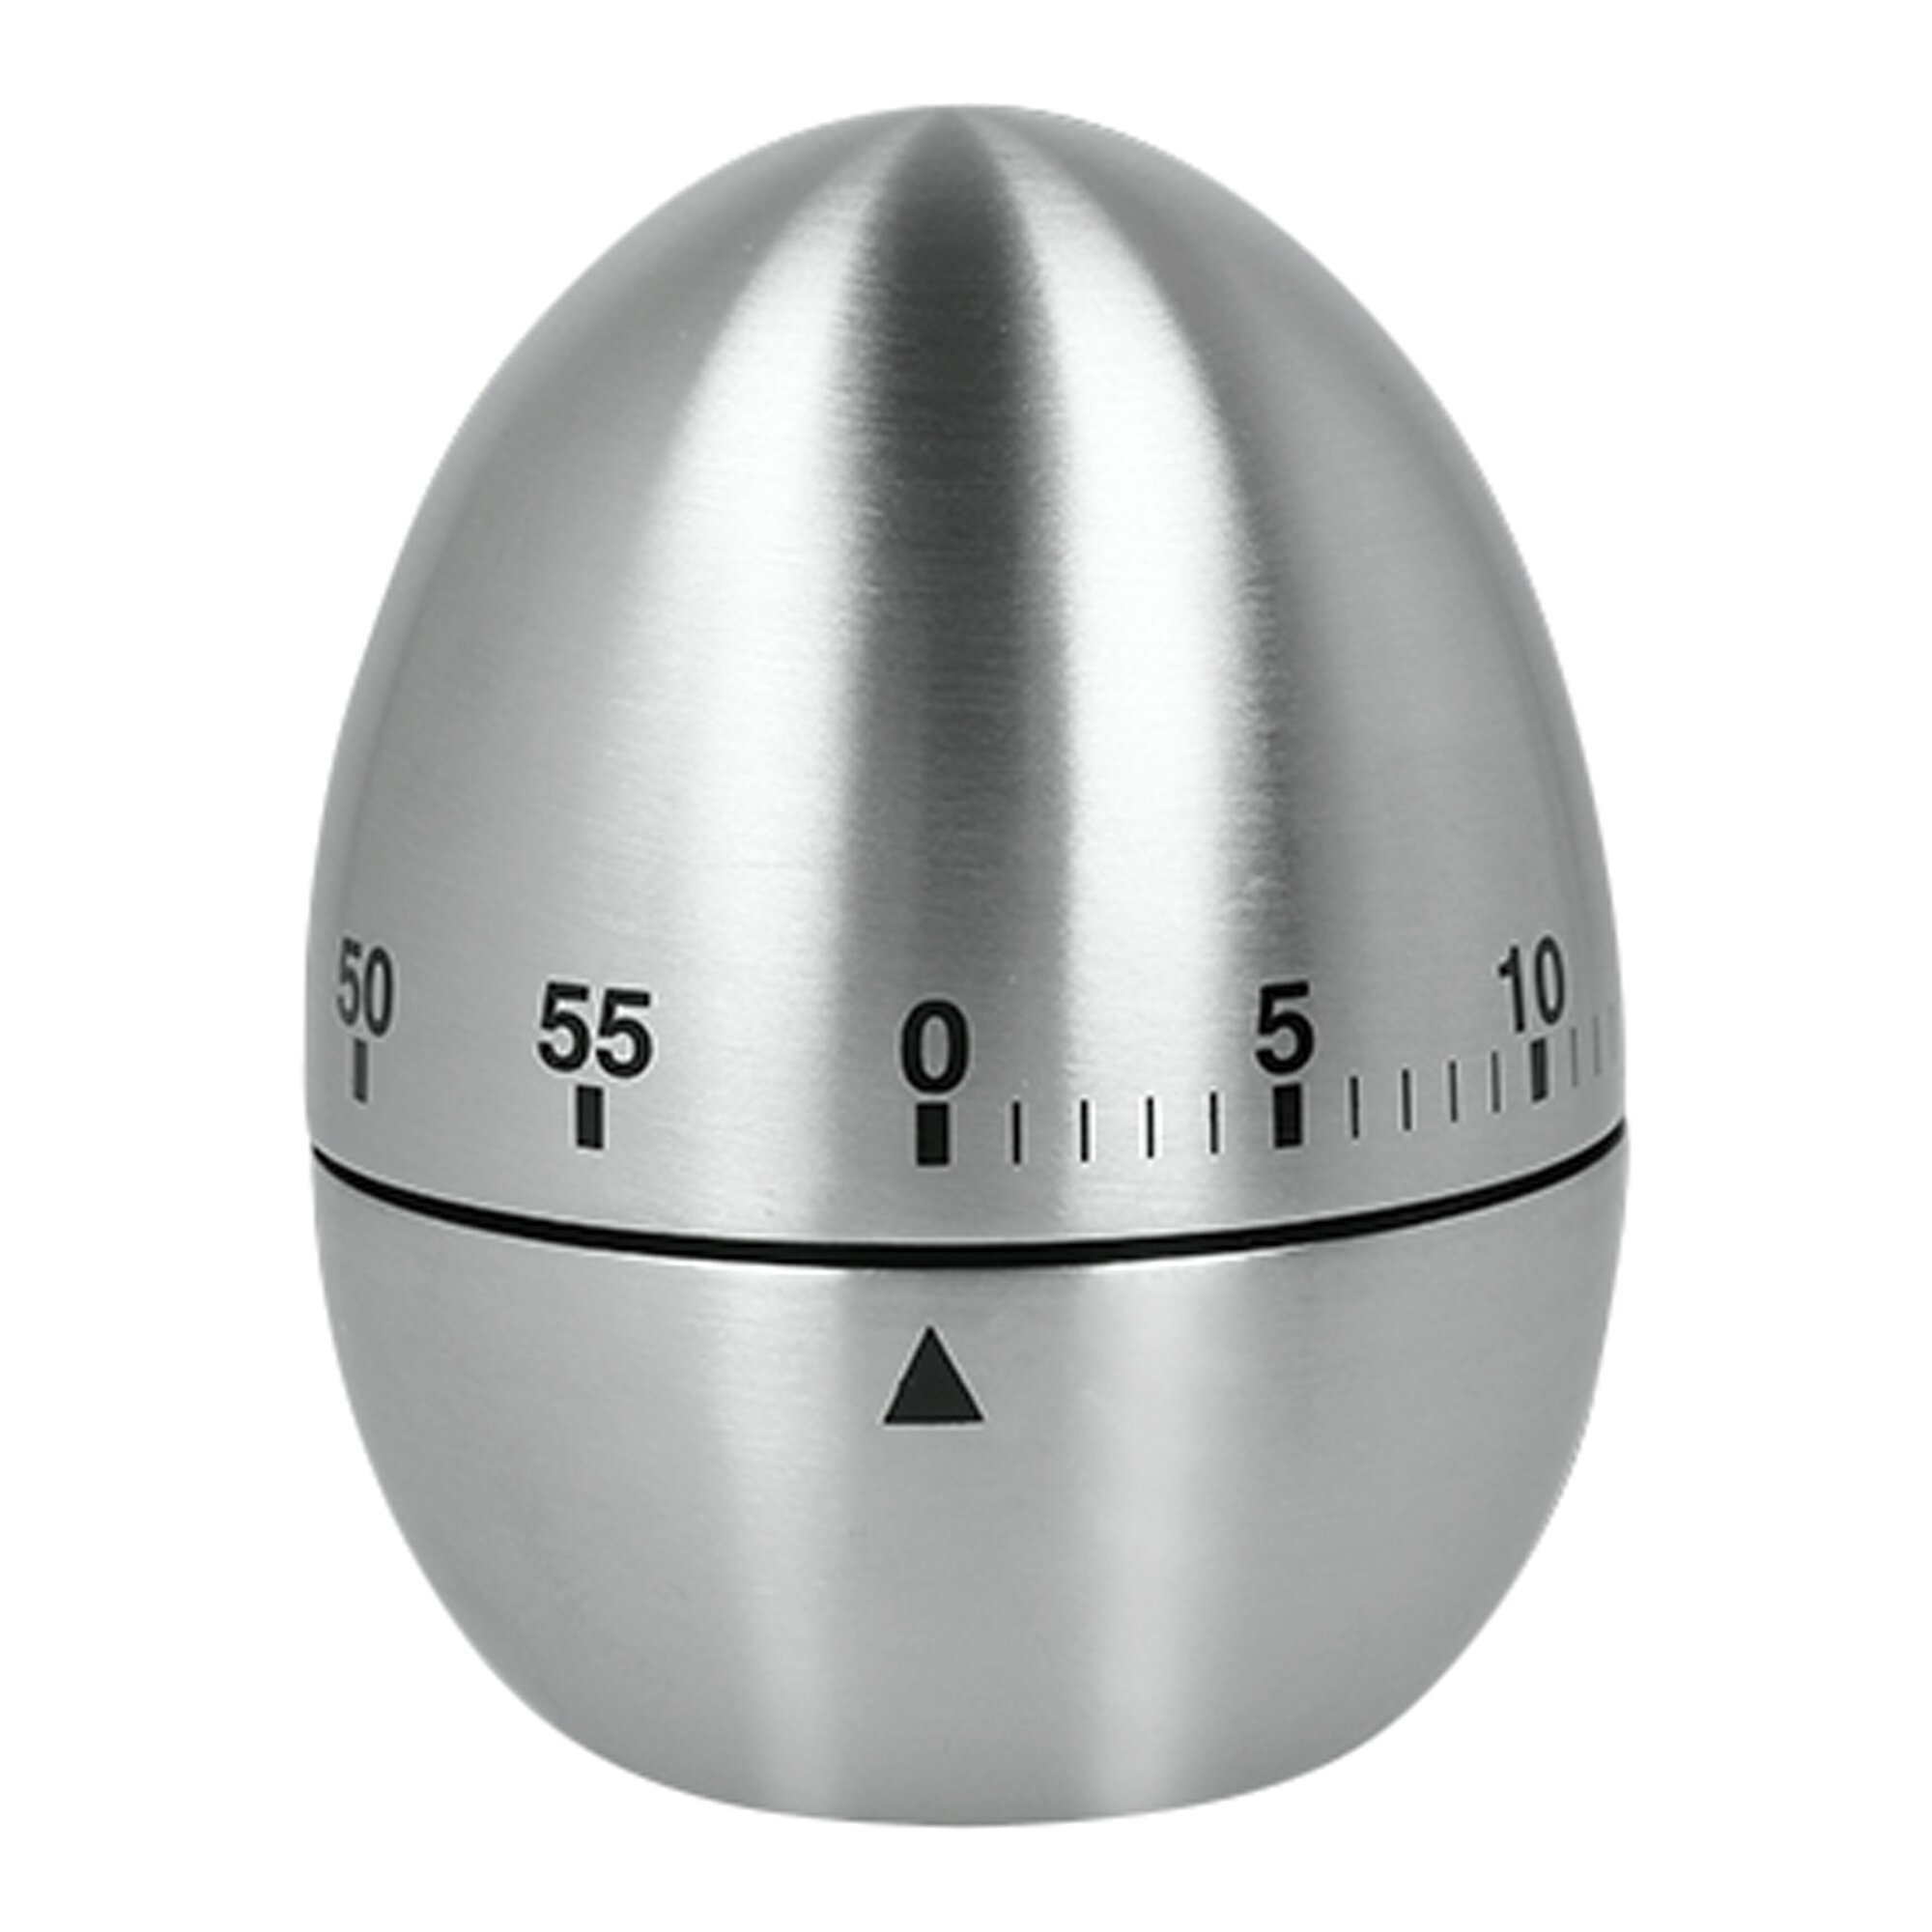 Timer Eieruhr Kurzzeitmesser Wecker Uhr Küchenhelfer Kochen Kochutensilien Küche